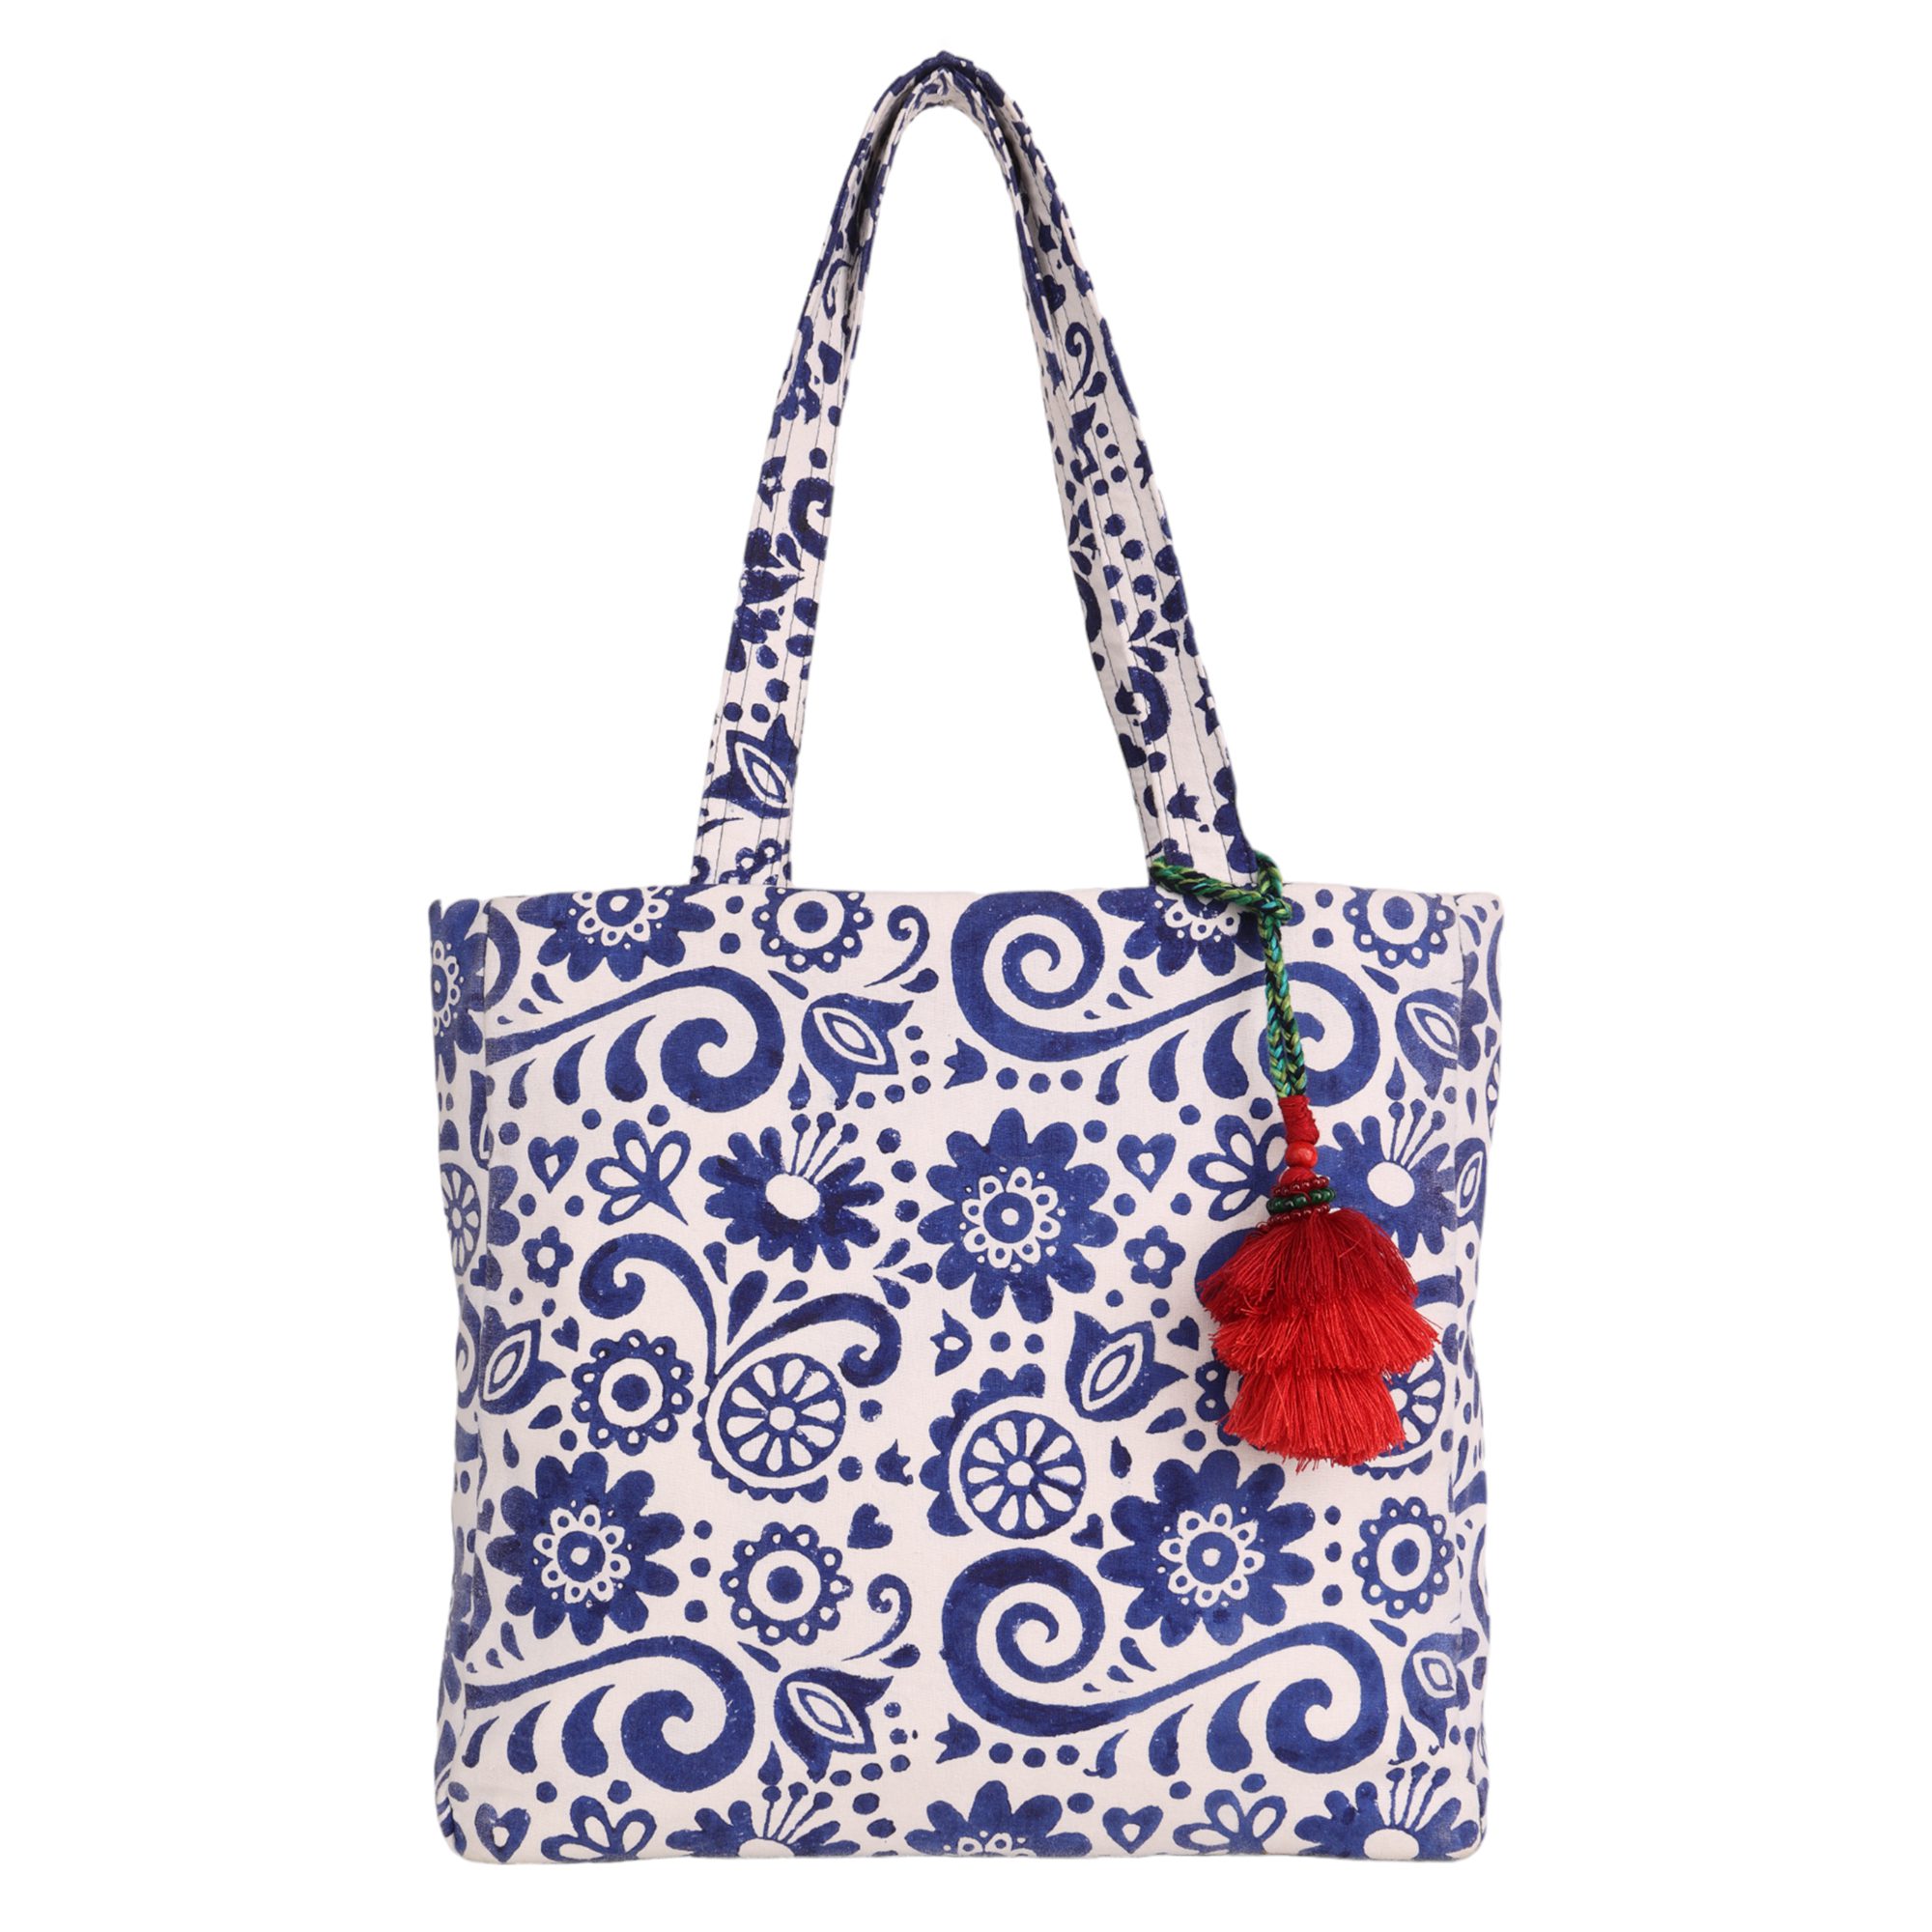 Get INDHA Floral Prints Shoulder Bag